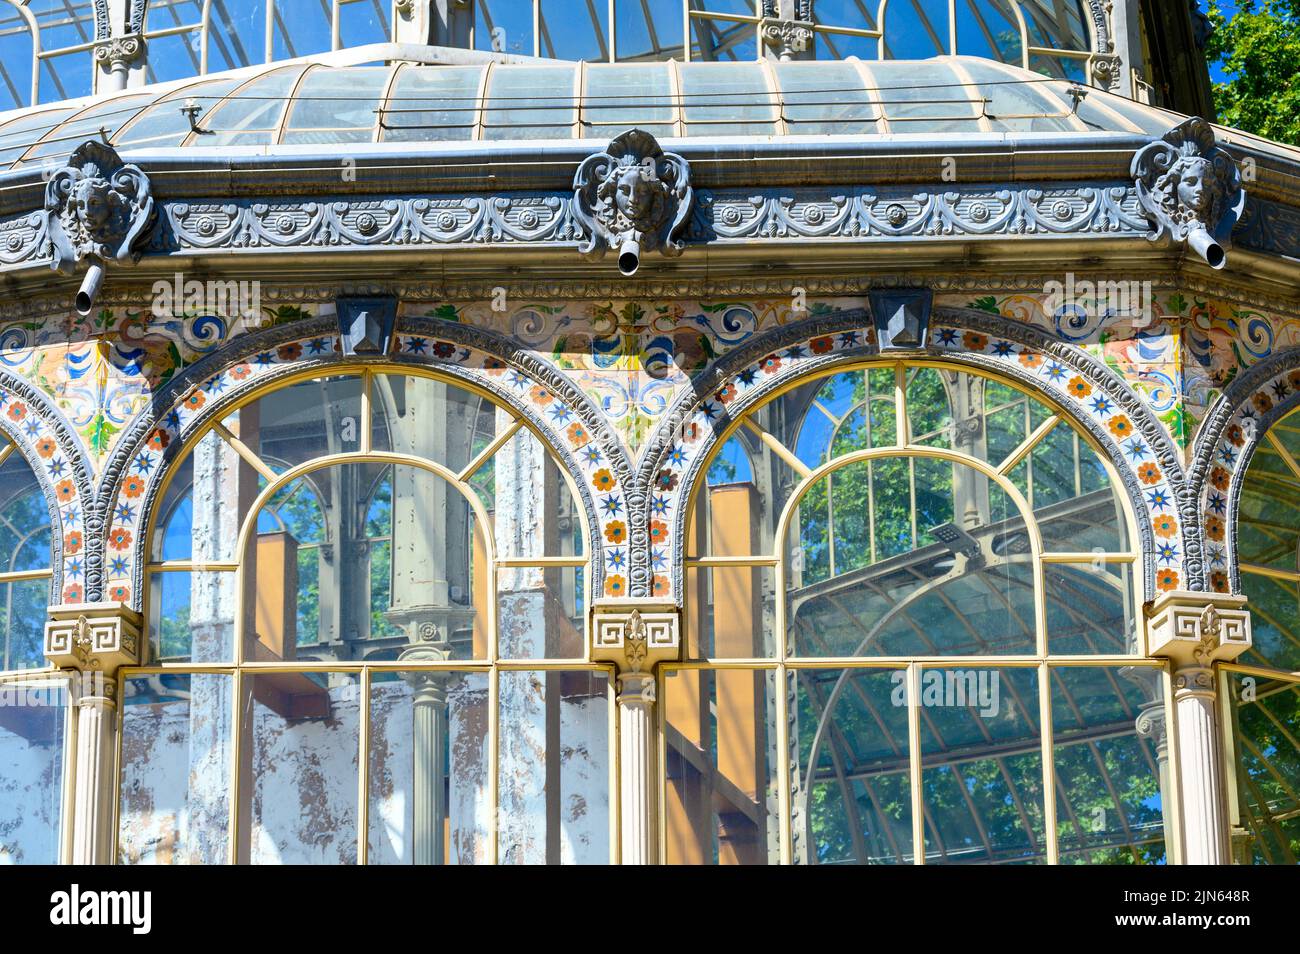 Estructura exterior del Palacio de Cristal, situado en el Parque del Buen Retiro. El edificio es de vidrio y hierro decorado con cerco Foto de stock